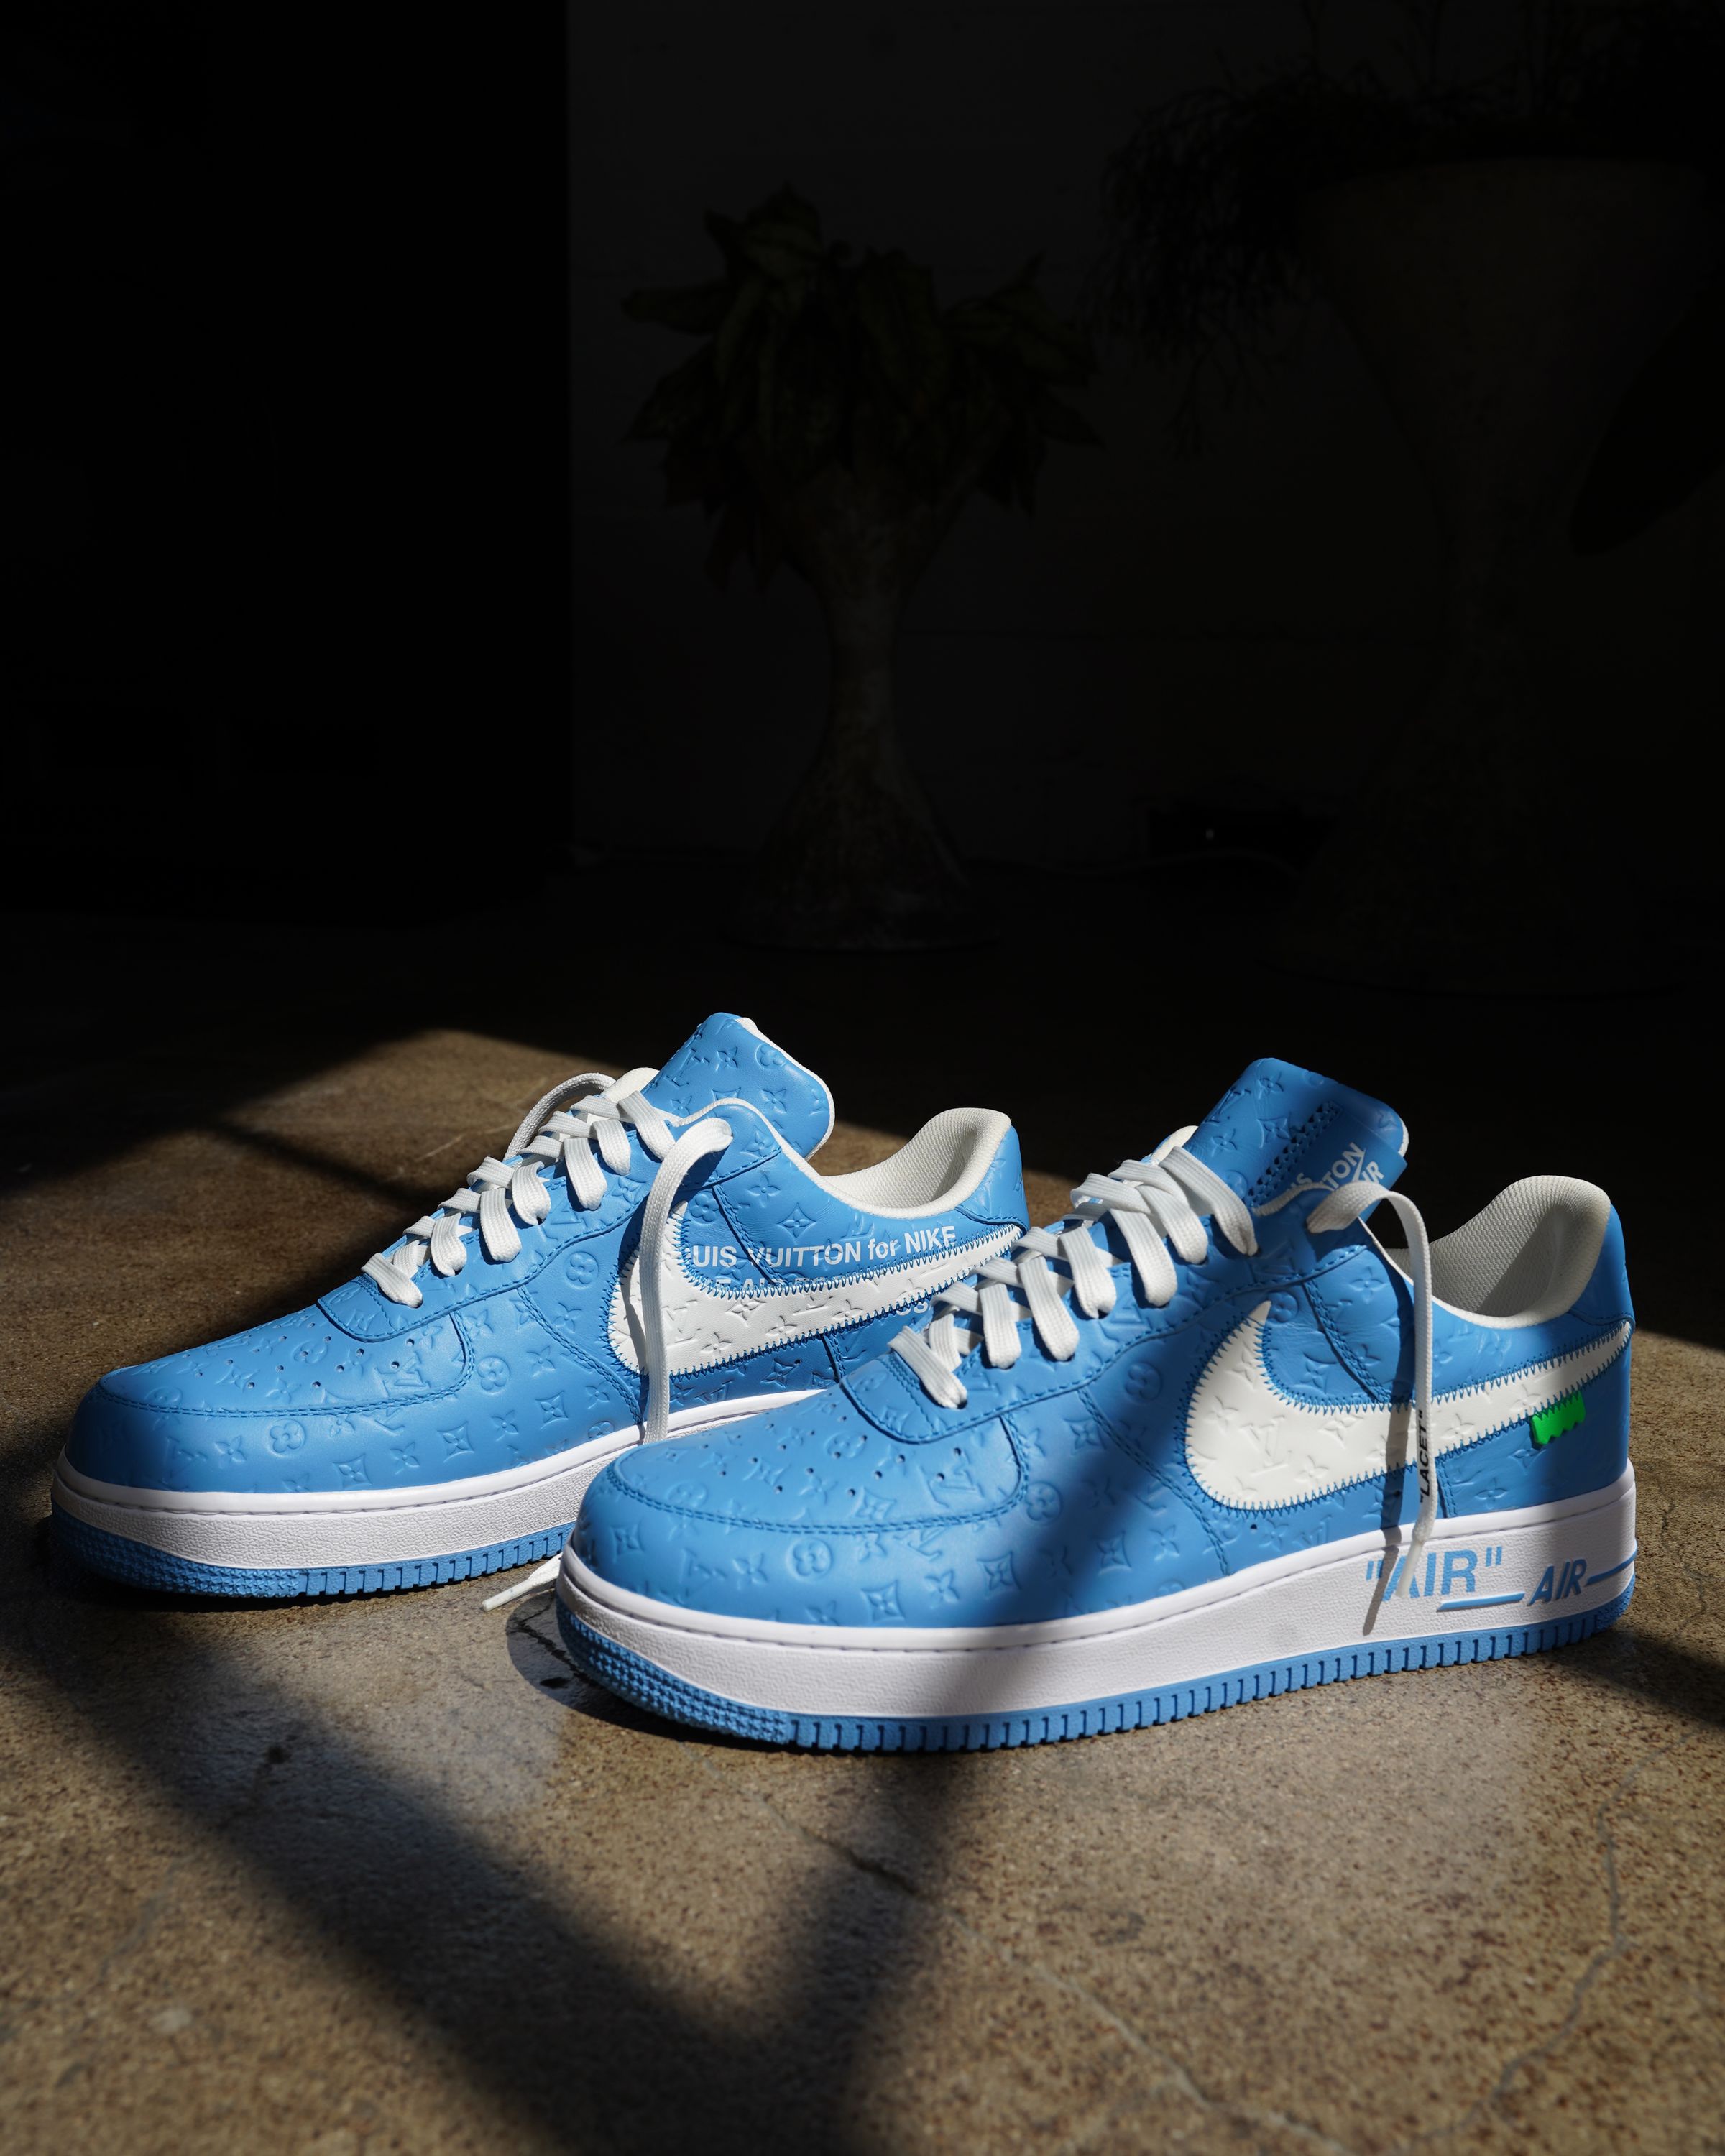 Nike Air Force 1 Low x Louis Vuitton University Blue - Men's Size 9.5